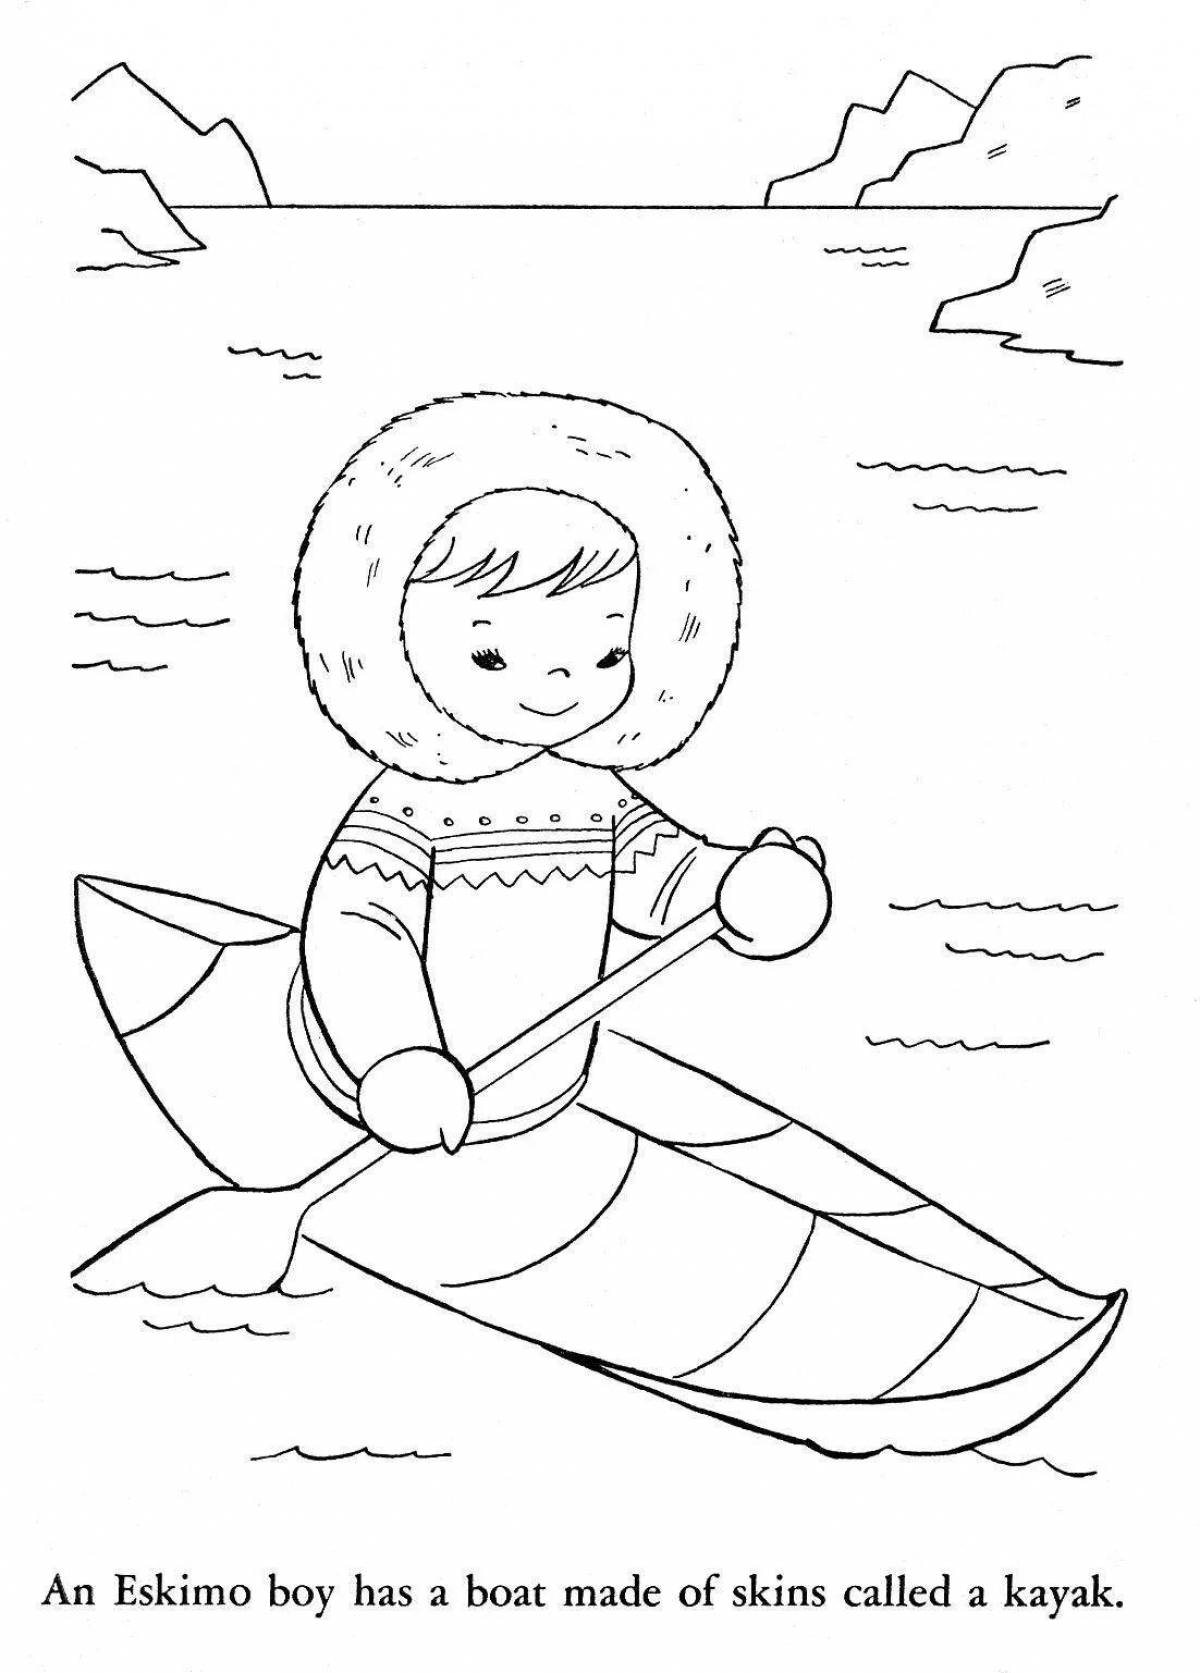 Fun coloring book for eskimo children